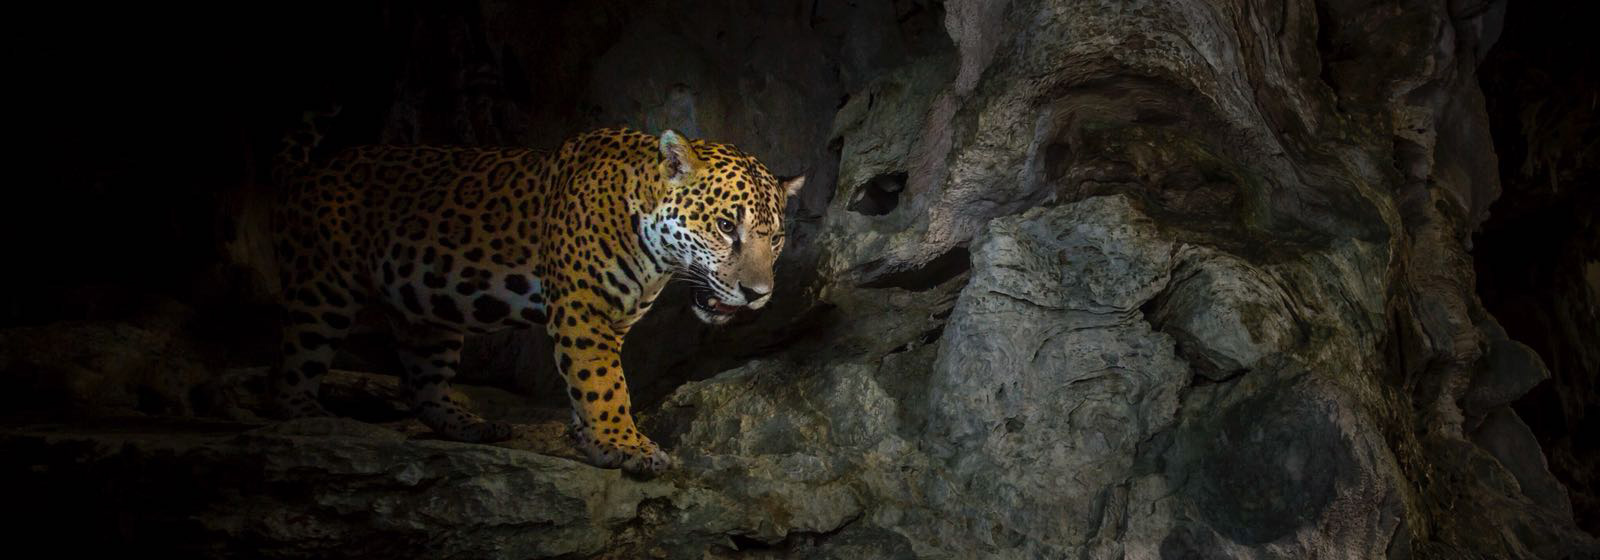 Jaguar at Runaway Creek in Belize